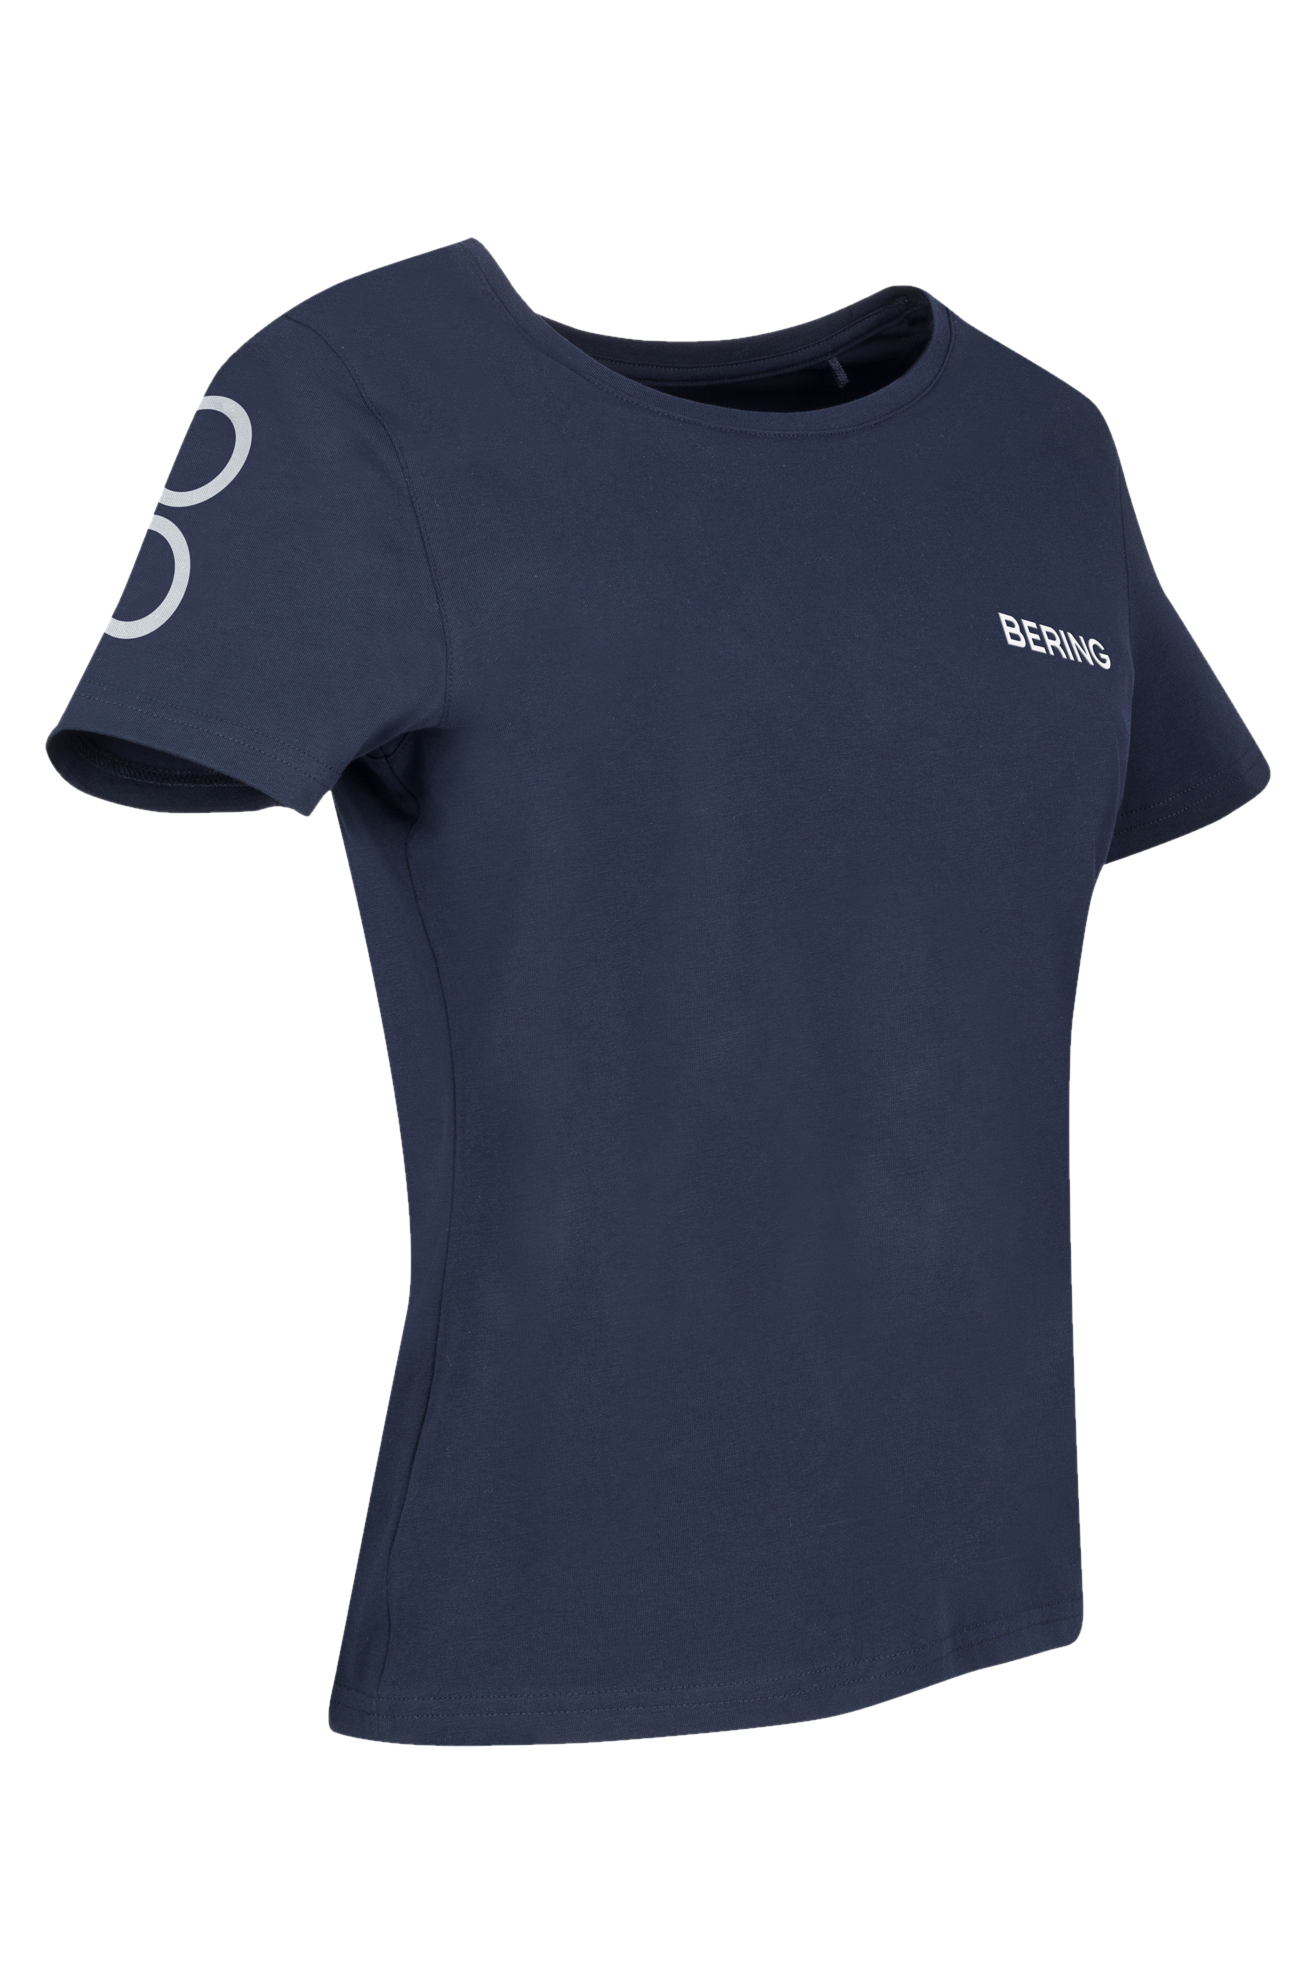 Bering Camiseta Mujer  Mecanic Azul Marino